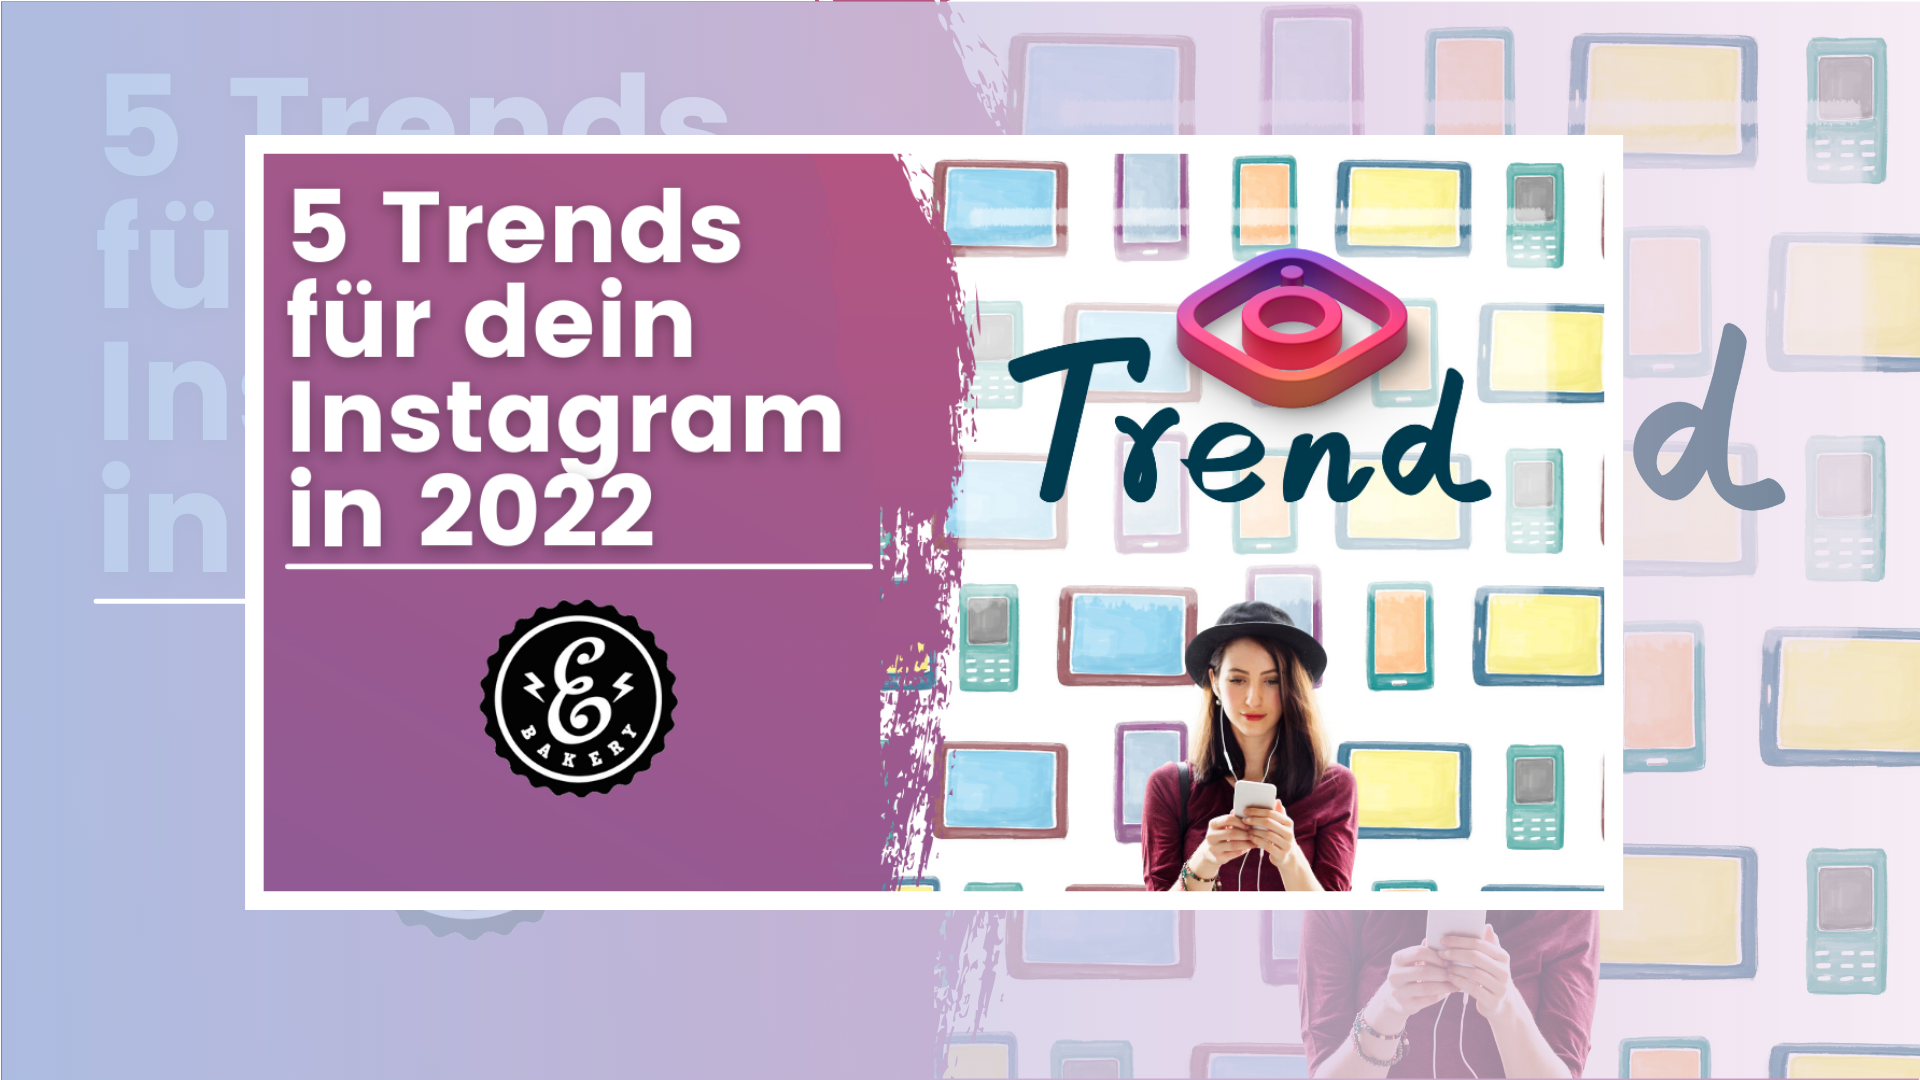 5 tendências do Instagram para 2022 -Tendências para uma estratégia de sucesso no Instagram